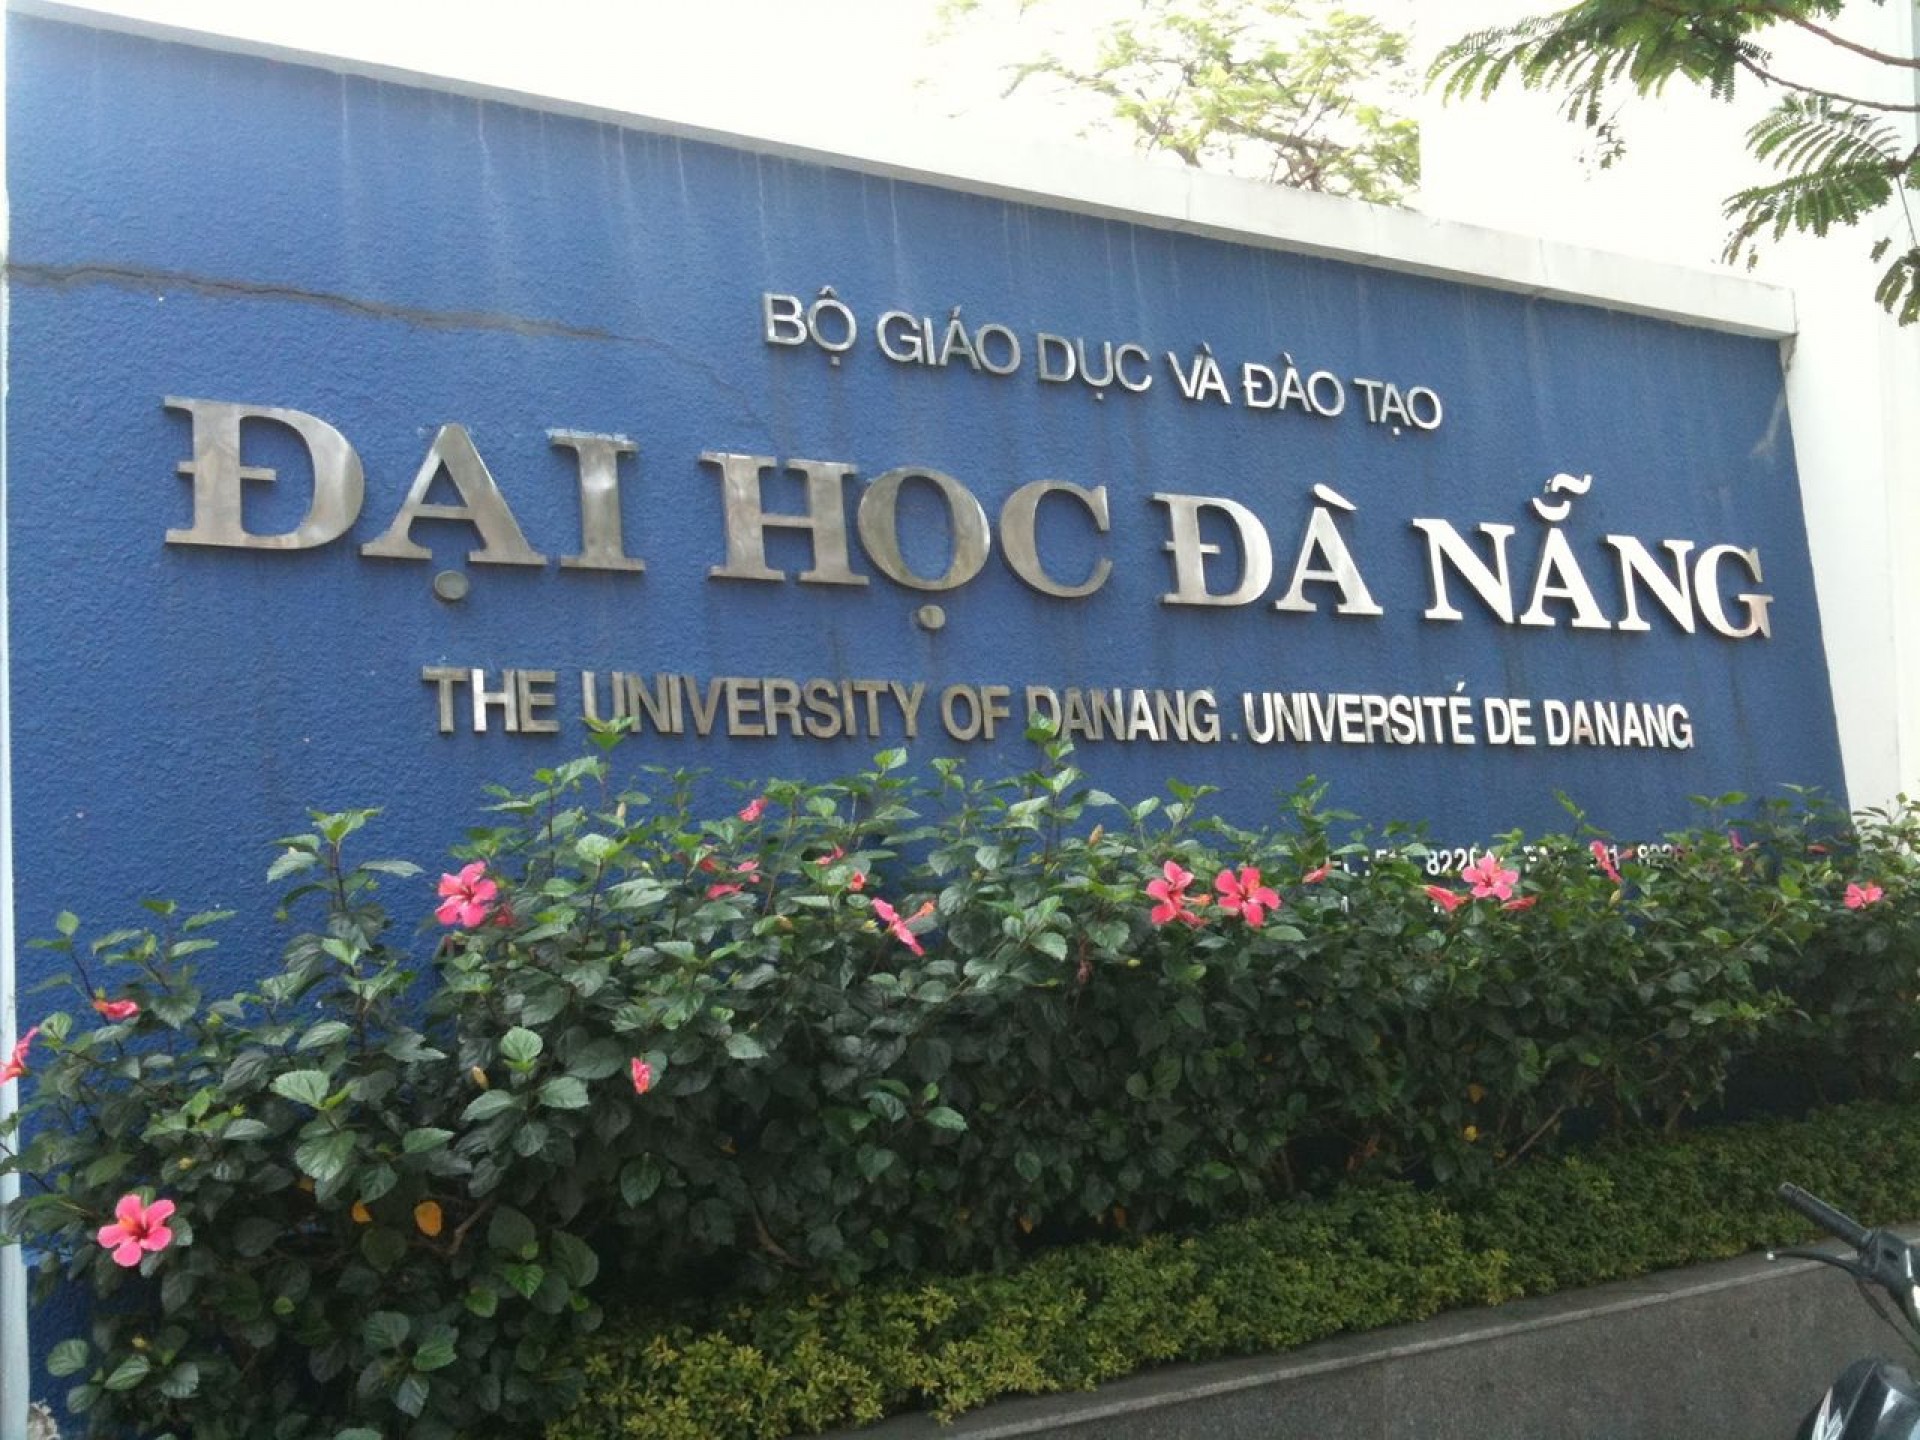 Vì đâu Đại học Đà Nẵng luôn được tin tưởng và lựa chọn?